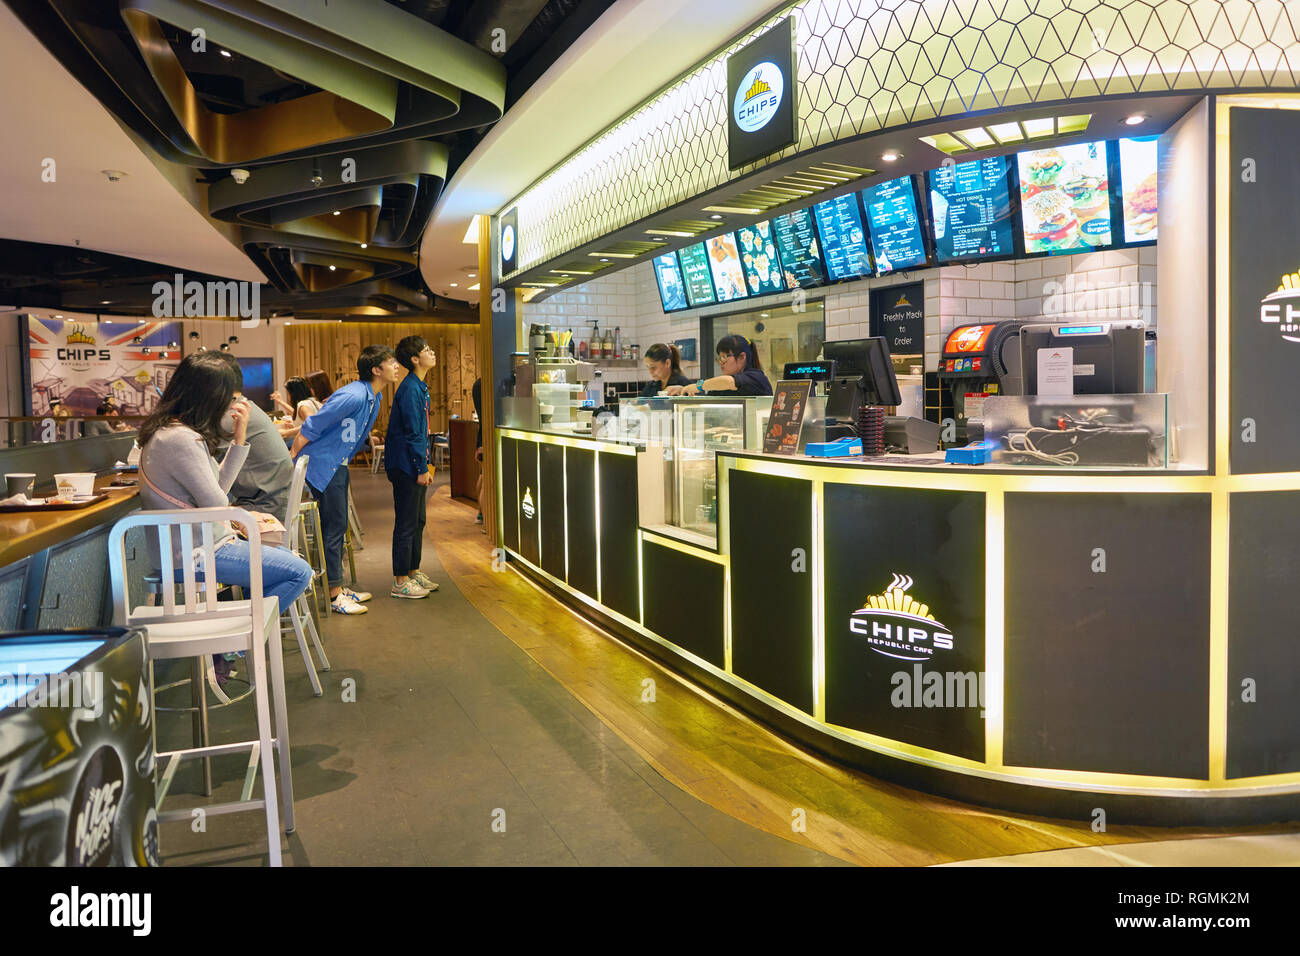 HONG KONG - CIRCA NOVEMBER, 2016: Chips Republic Cafe in Hong Kong. Stock Photo